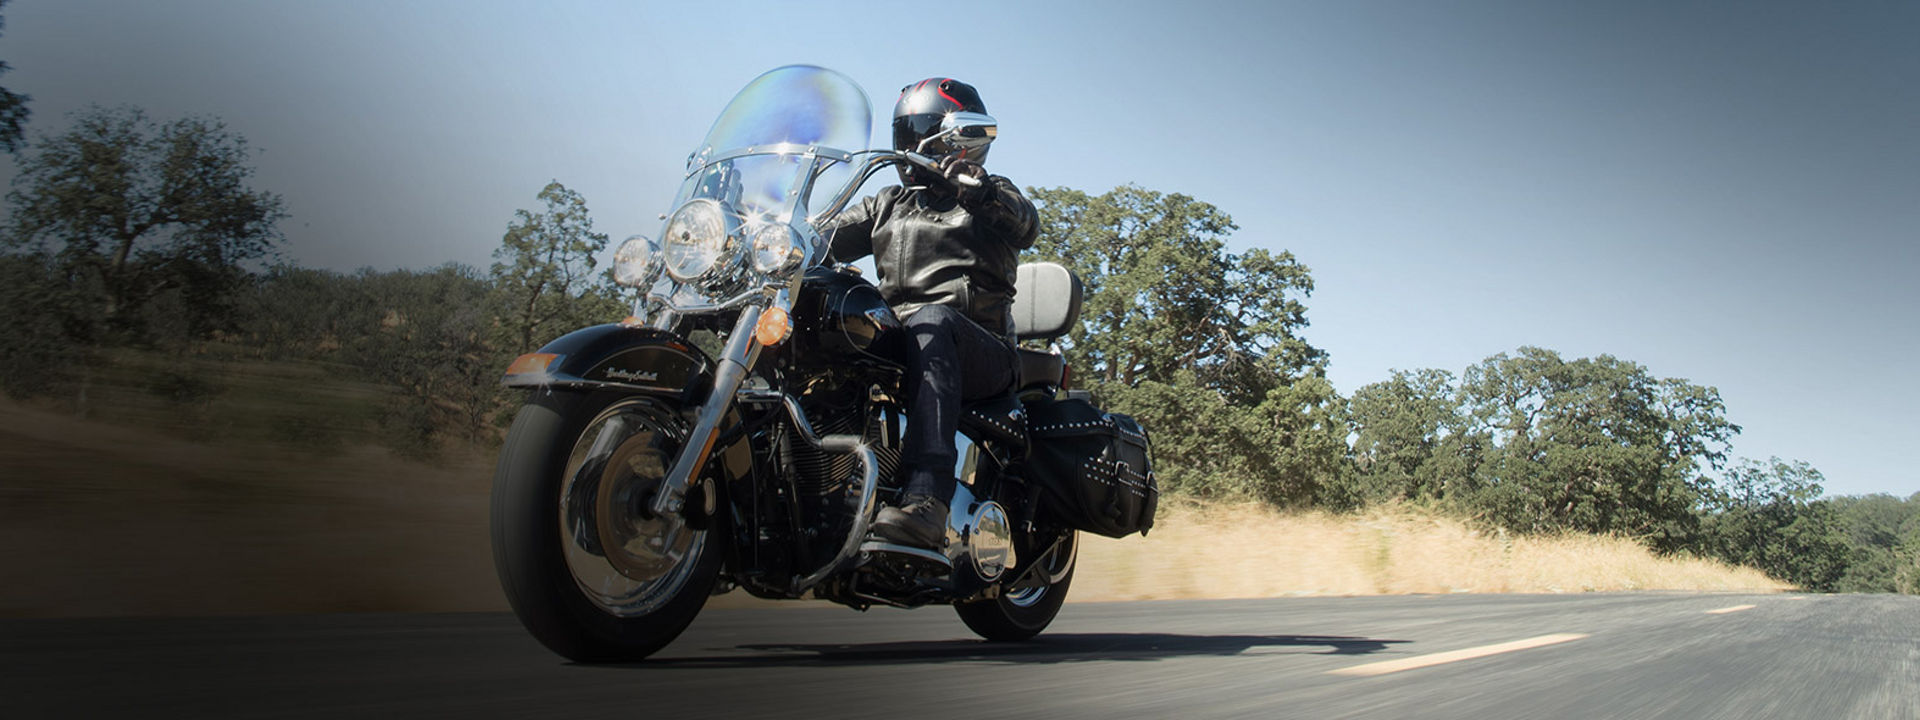 Das Bild zeigt einen Motorradfahrer mit Bridgestone- Customreifen.